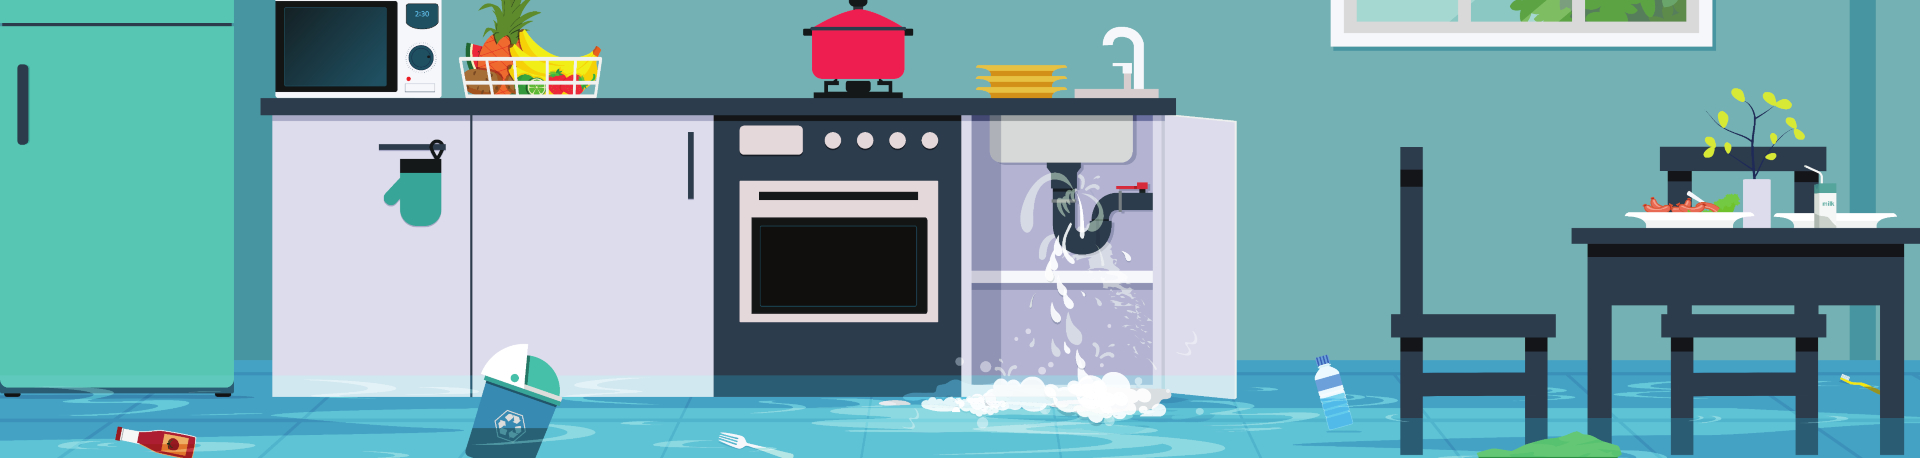 Flooded kitchen illustration